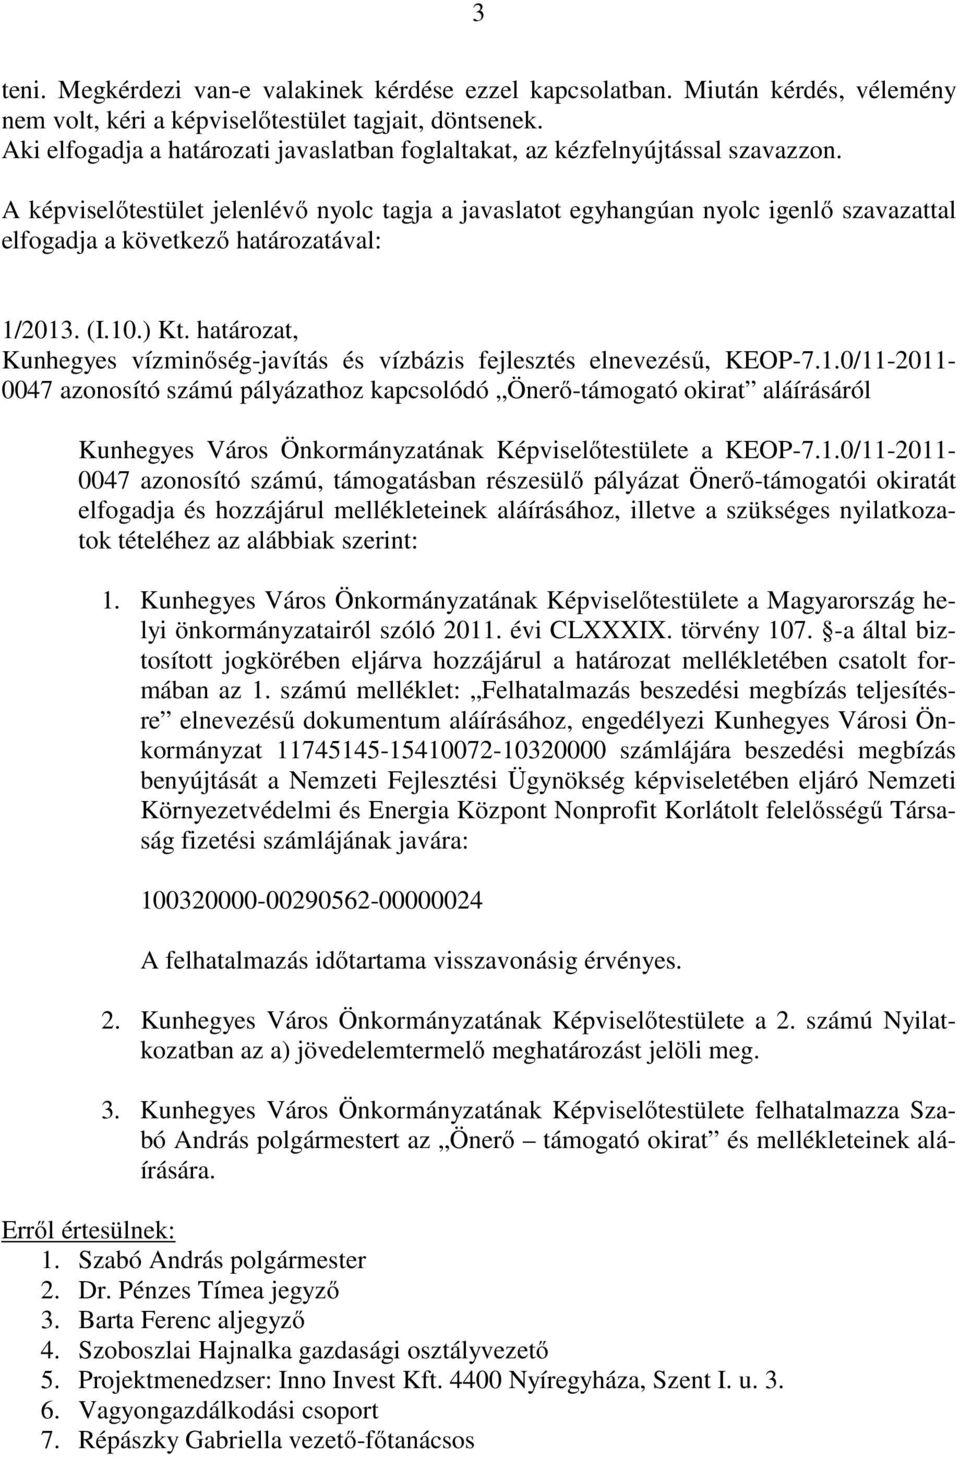 határozat, Kunhegyes vízminőség-javítás és vízbázis fejlesztés elnevezésű, KEOP-7.1.